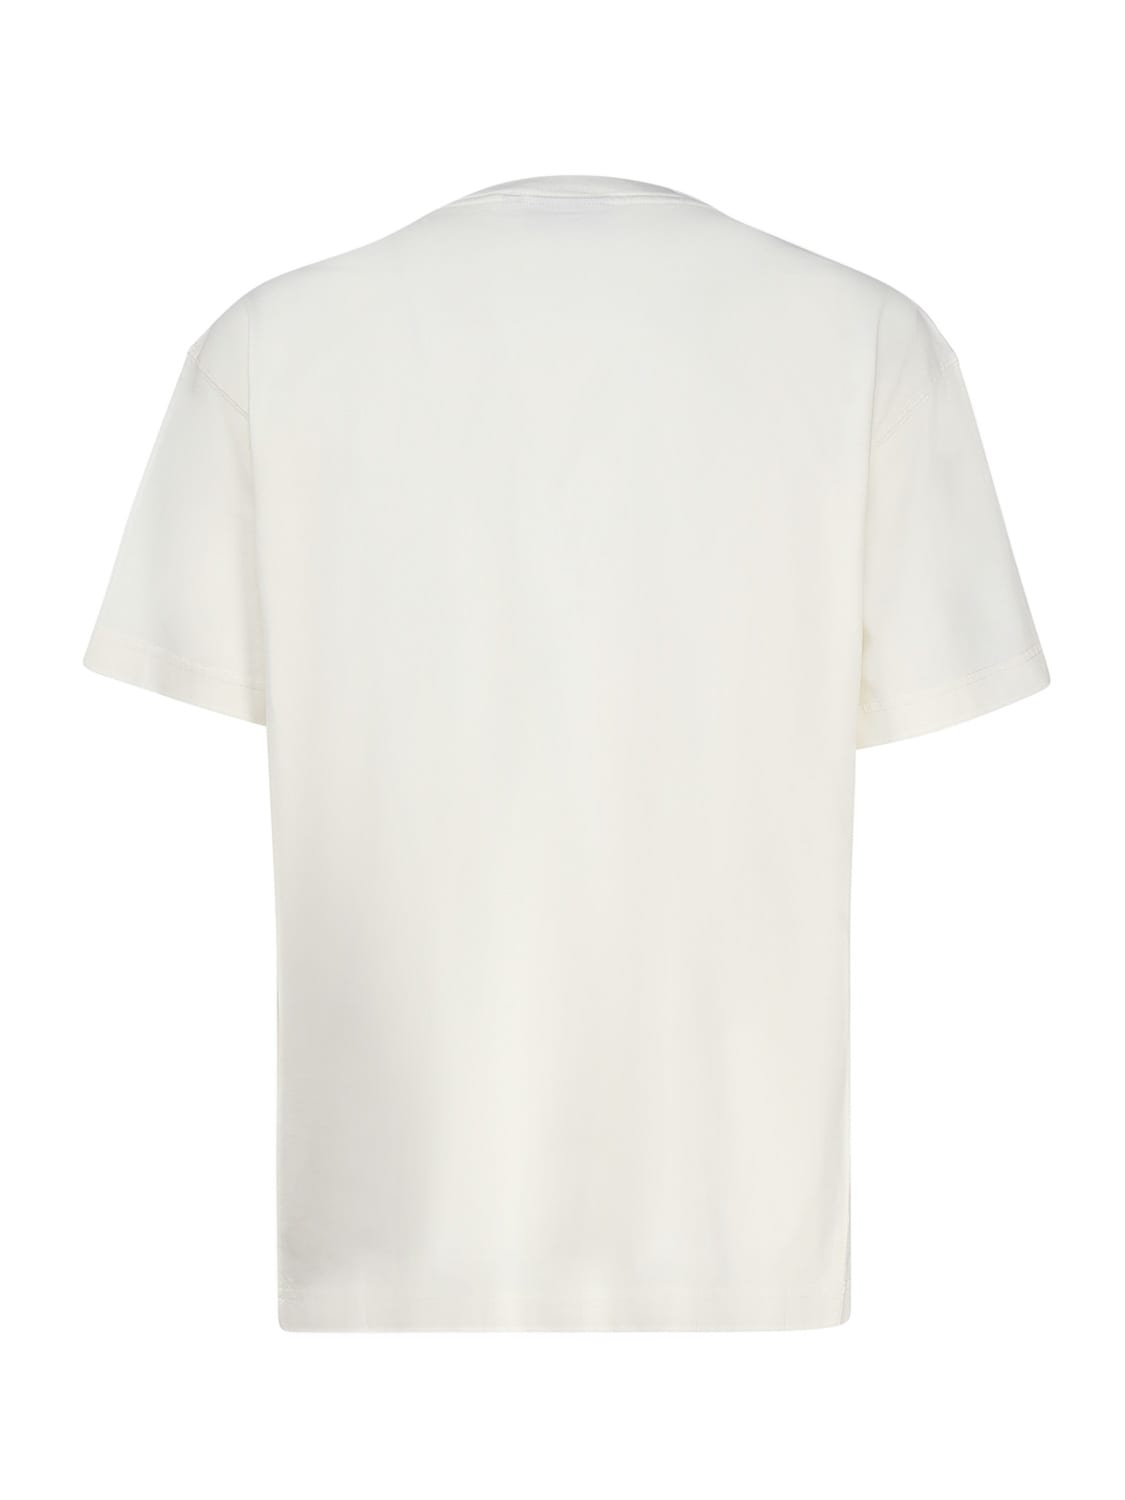 Shop Carhartt Nelson Cotton T-shirt In Wax